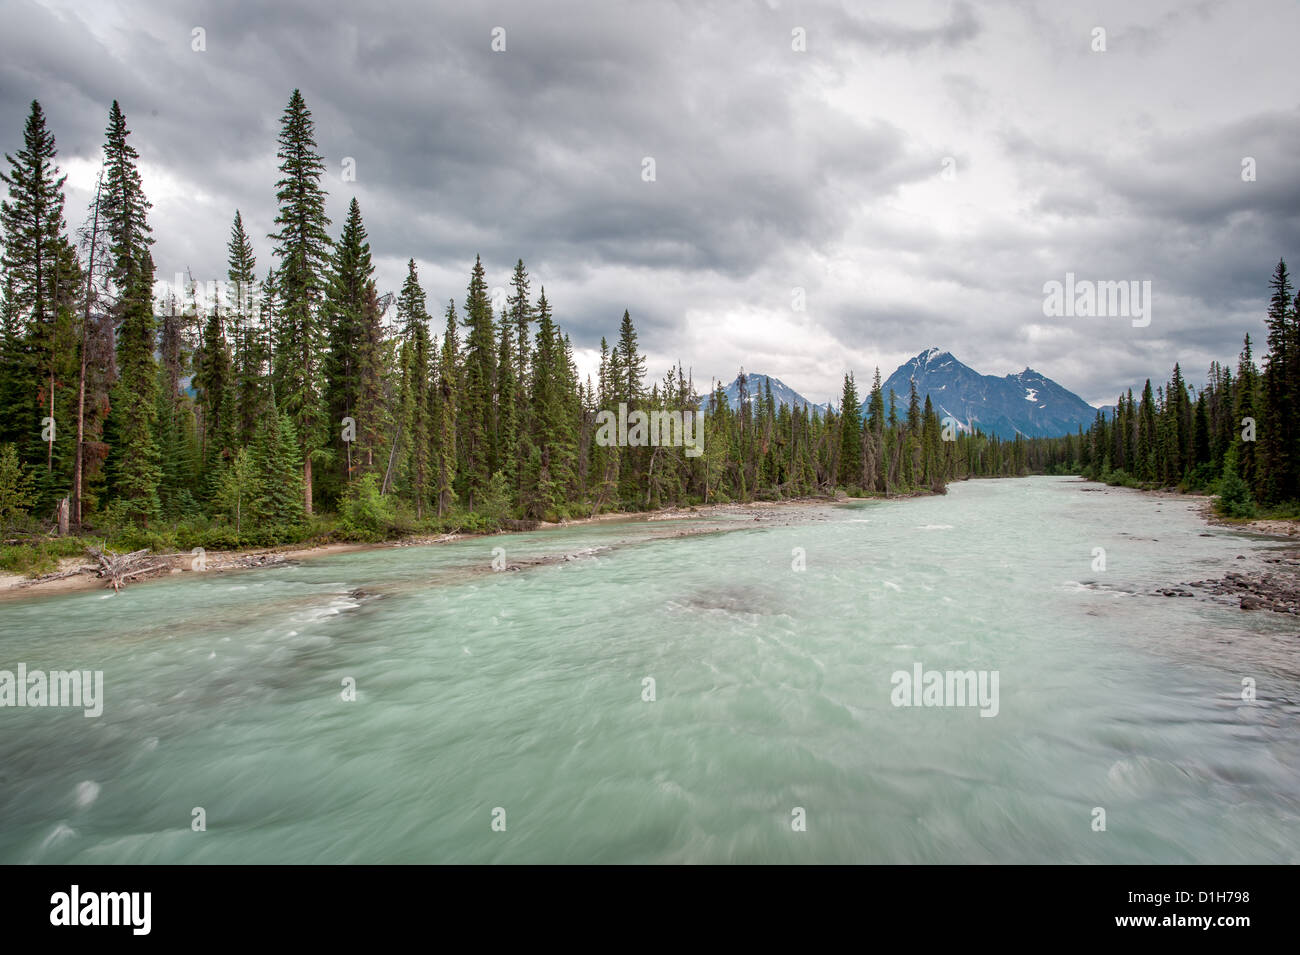 Scenic river in Jasper National Park, Alberta, Canada Stock Photo